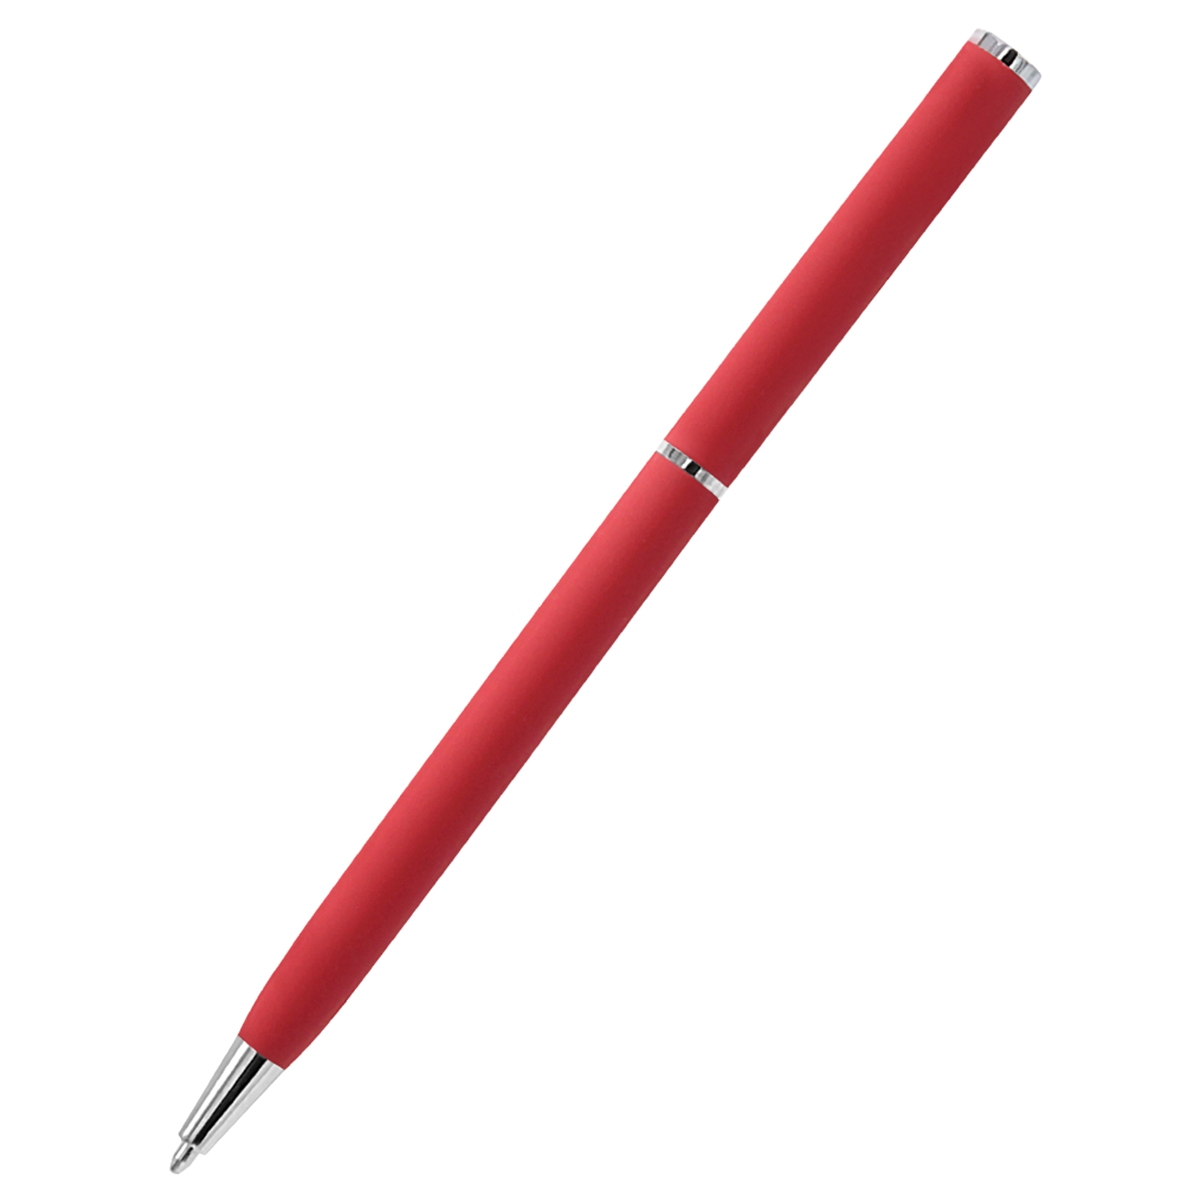 Ручка металлическая Tinny Soft софт-тач, красная, красный